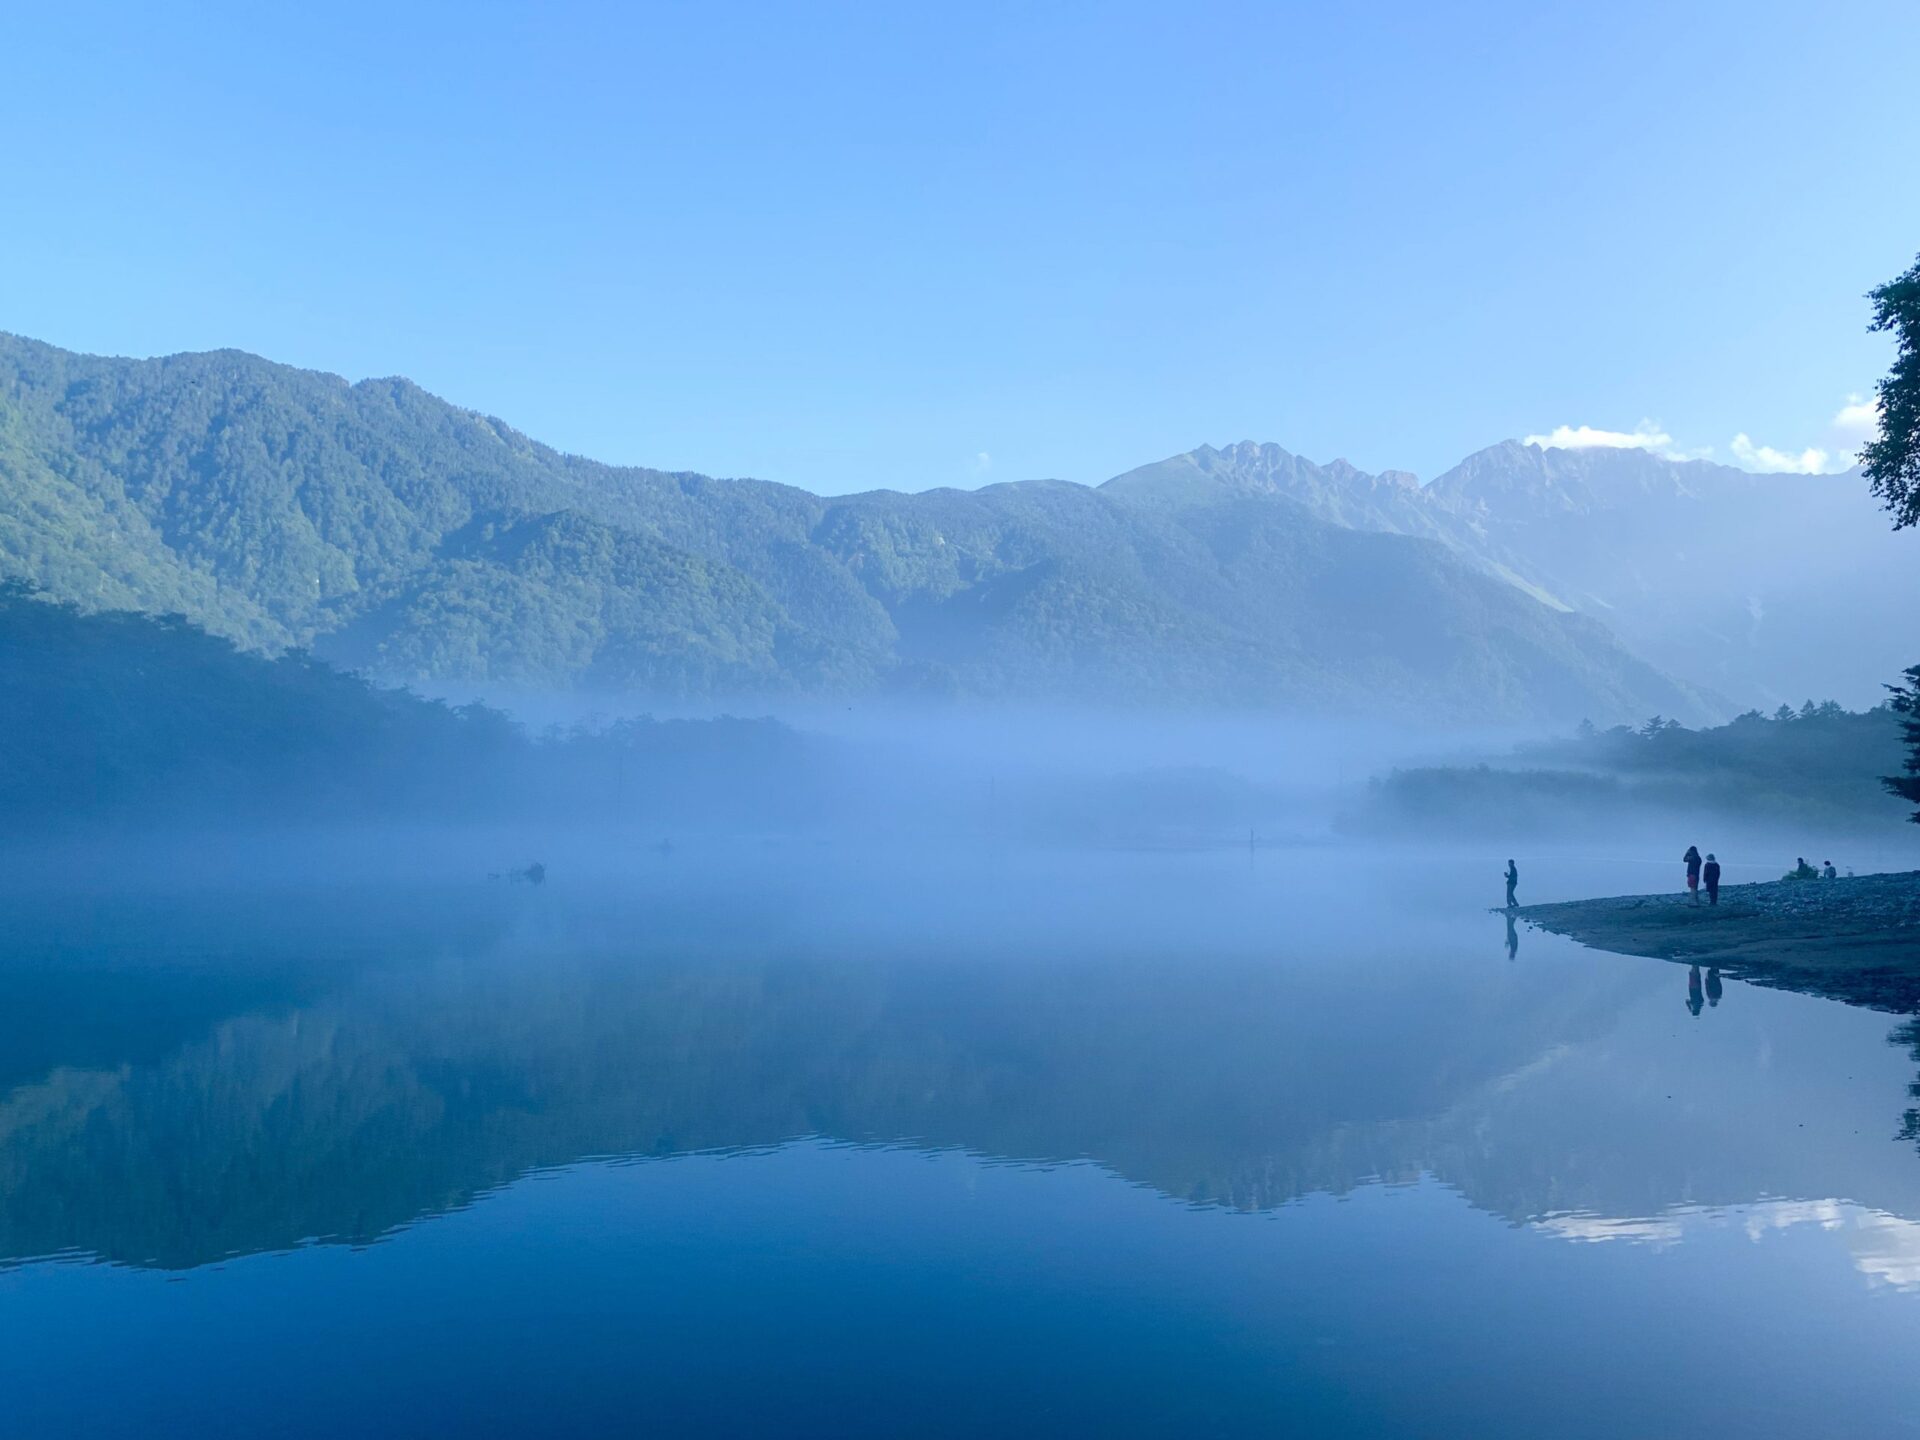 朝靄の大正池